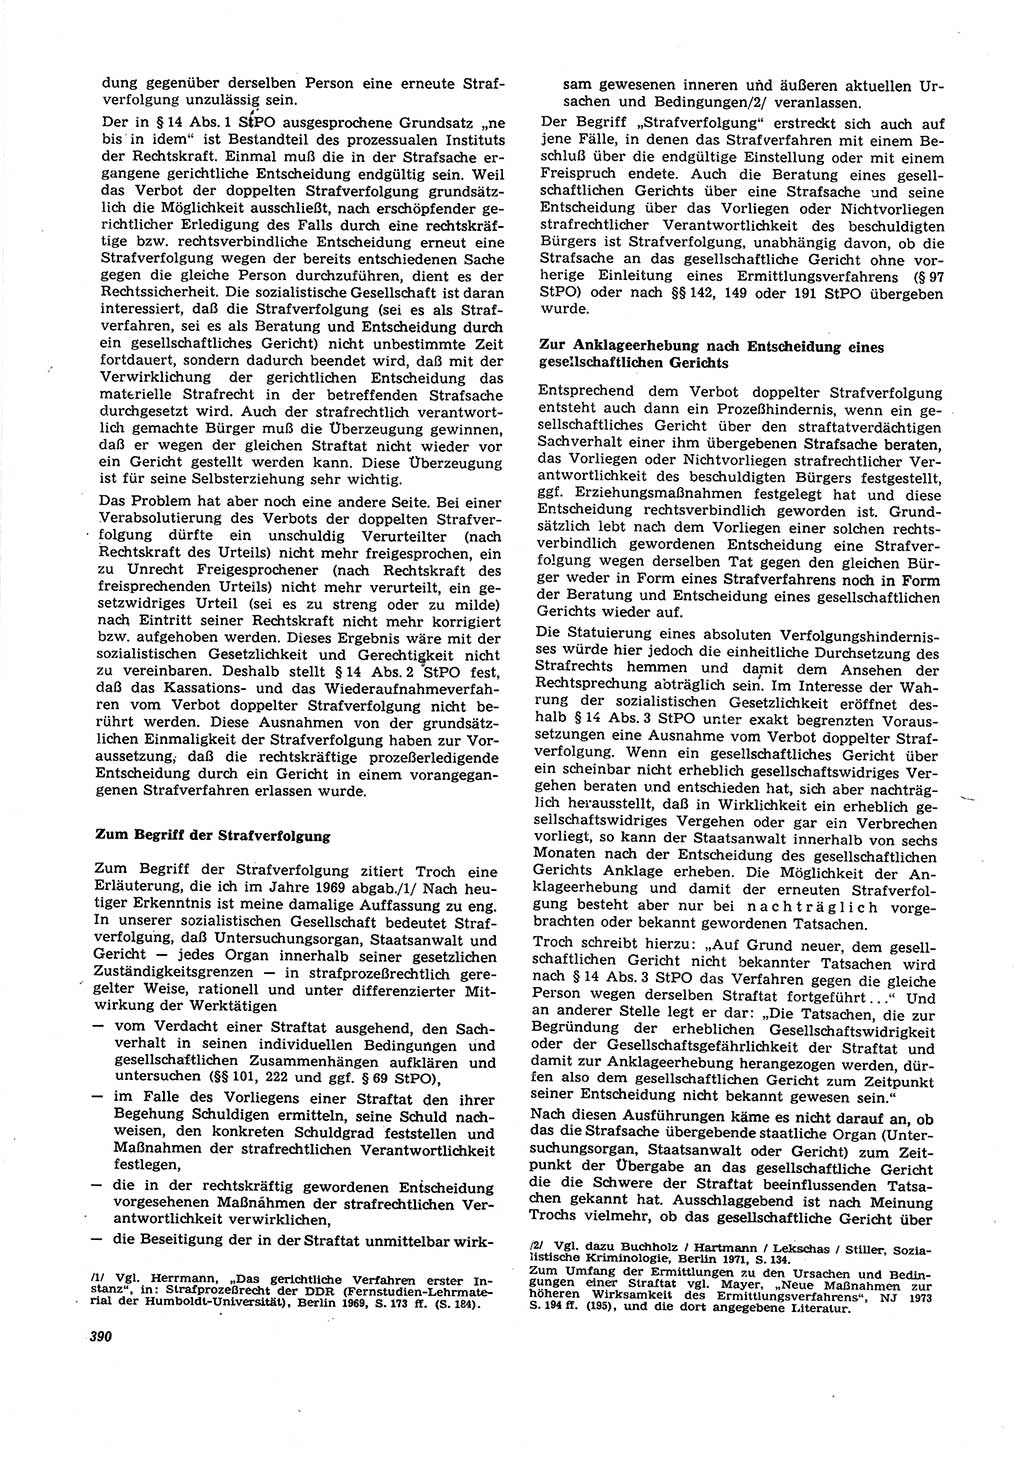 Neue Justiz (NJ), Zeitschrift für Recht und Rechtswissenschaft [Deutsche Demokratische Republik (DDR)], 27. Jahrgang 1973, Seite 390 (NJ DDR 1973, S. 390)